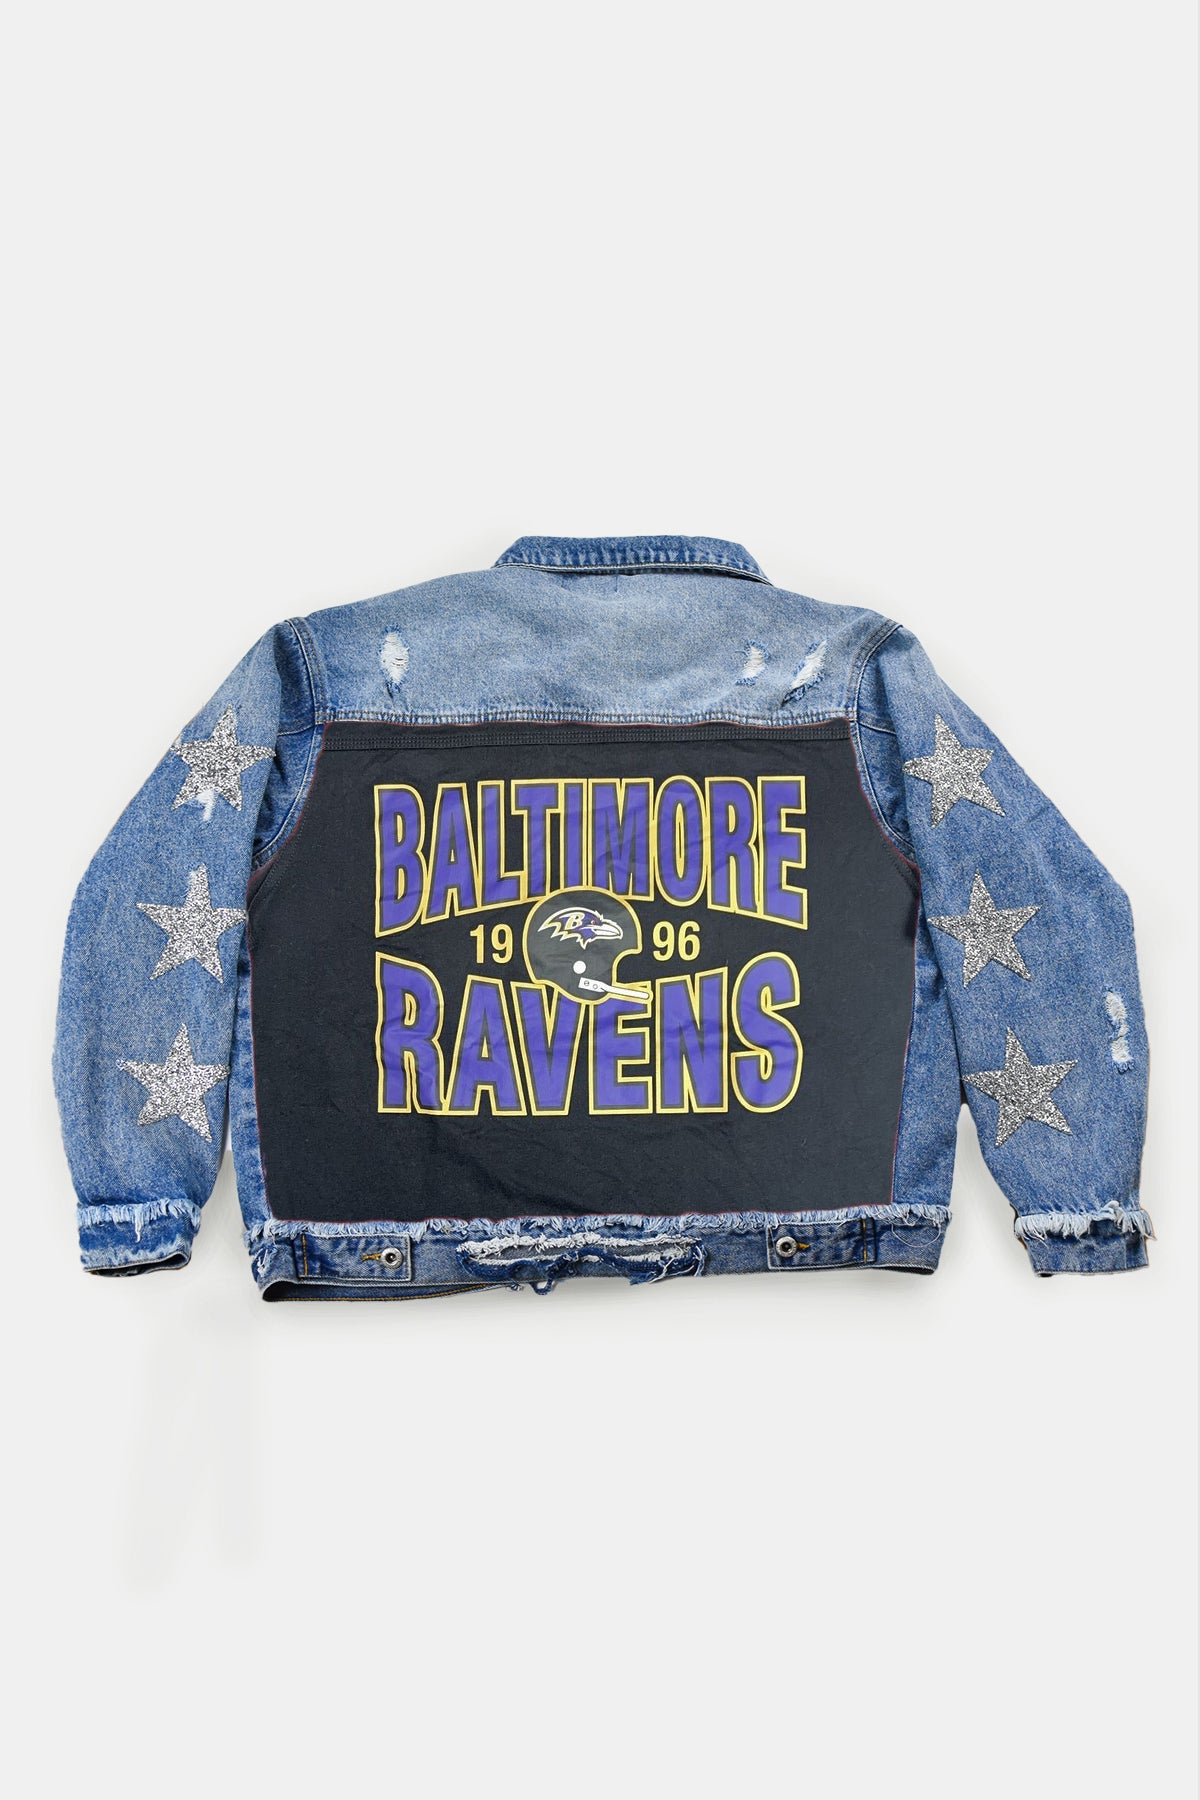 Custom Order Ravens Jackets for Rachel